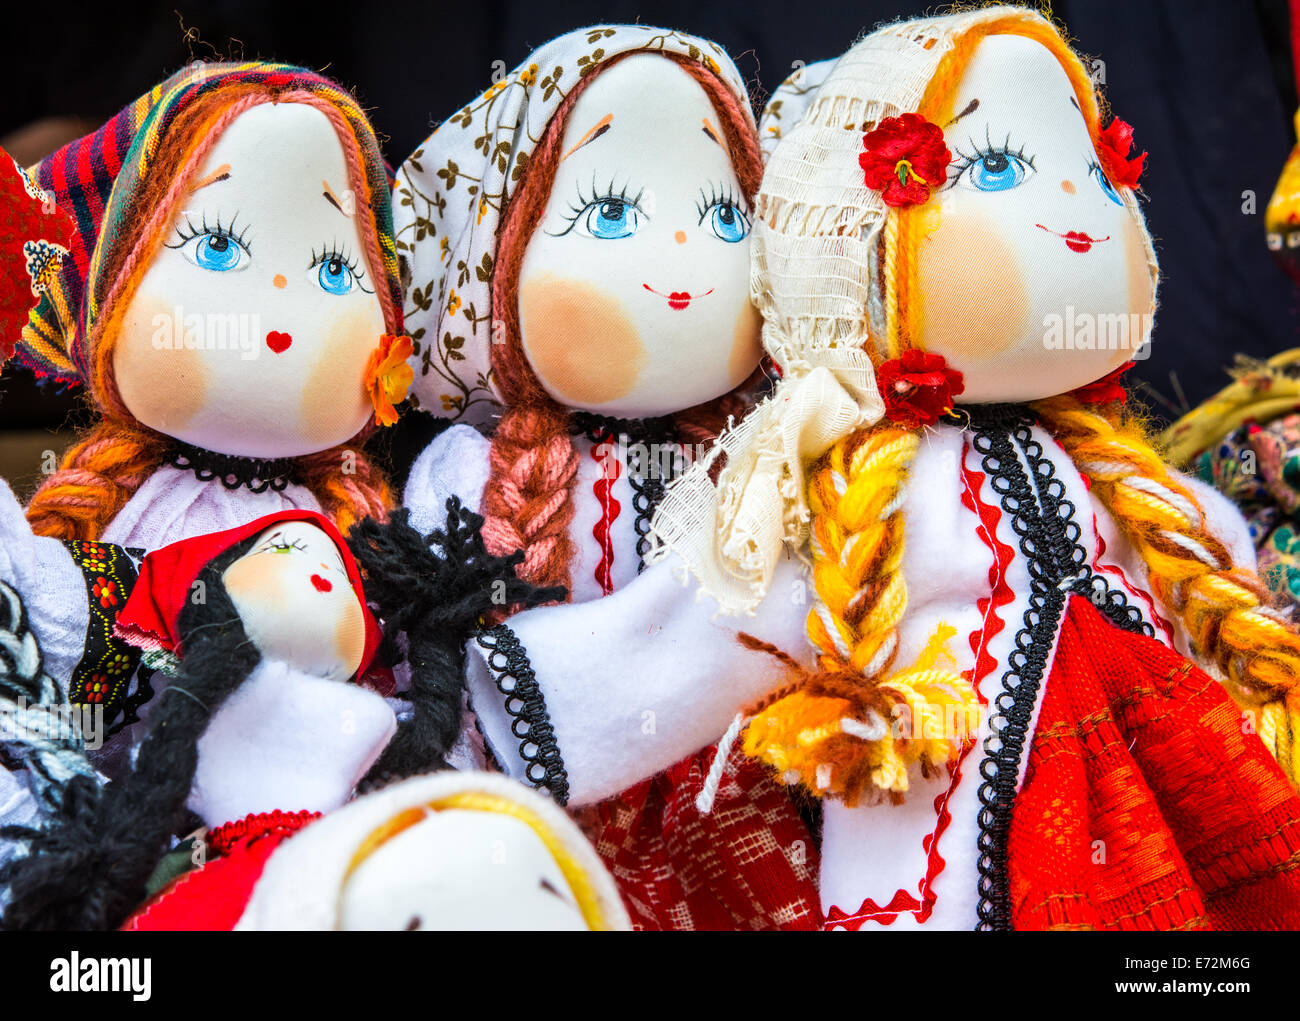 Bellissima ragazza toy: romeno artigianale di bambole in costume tradiditional Foto Stock